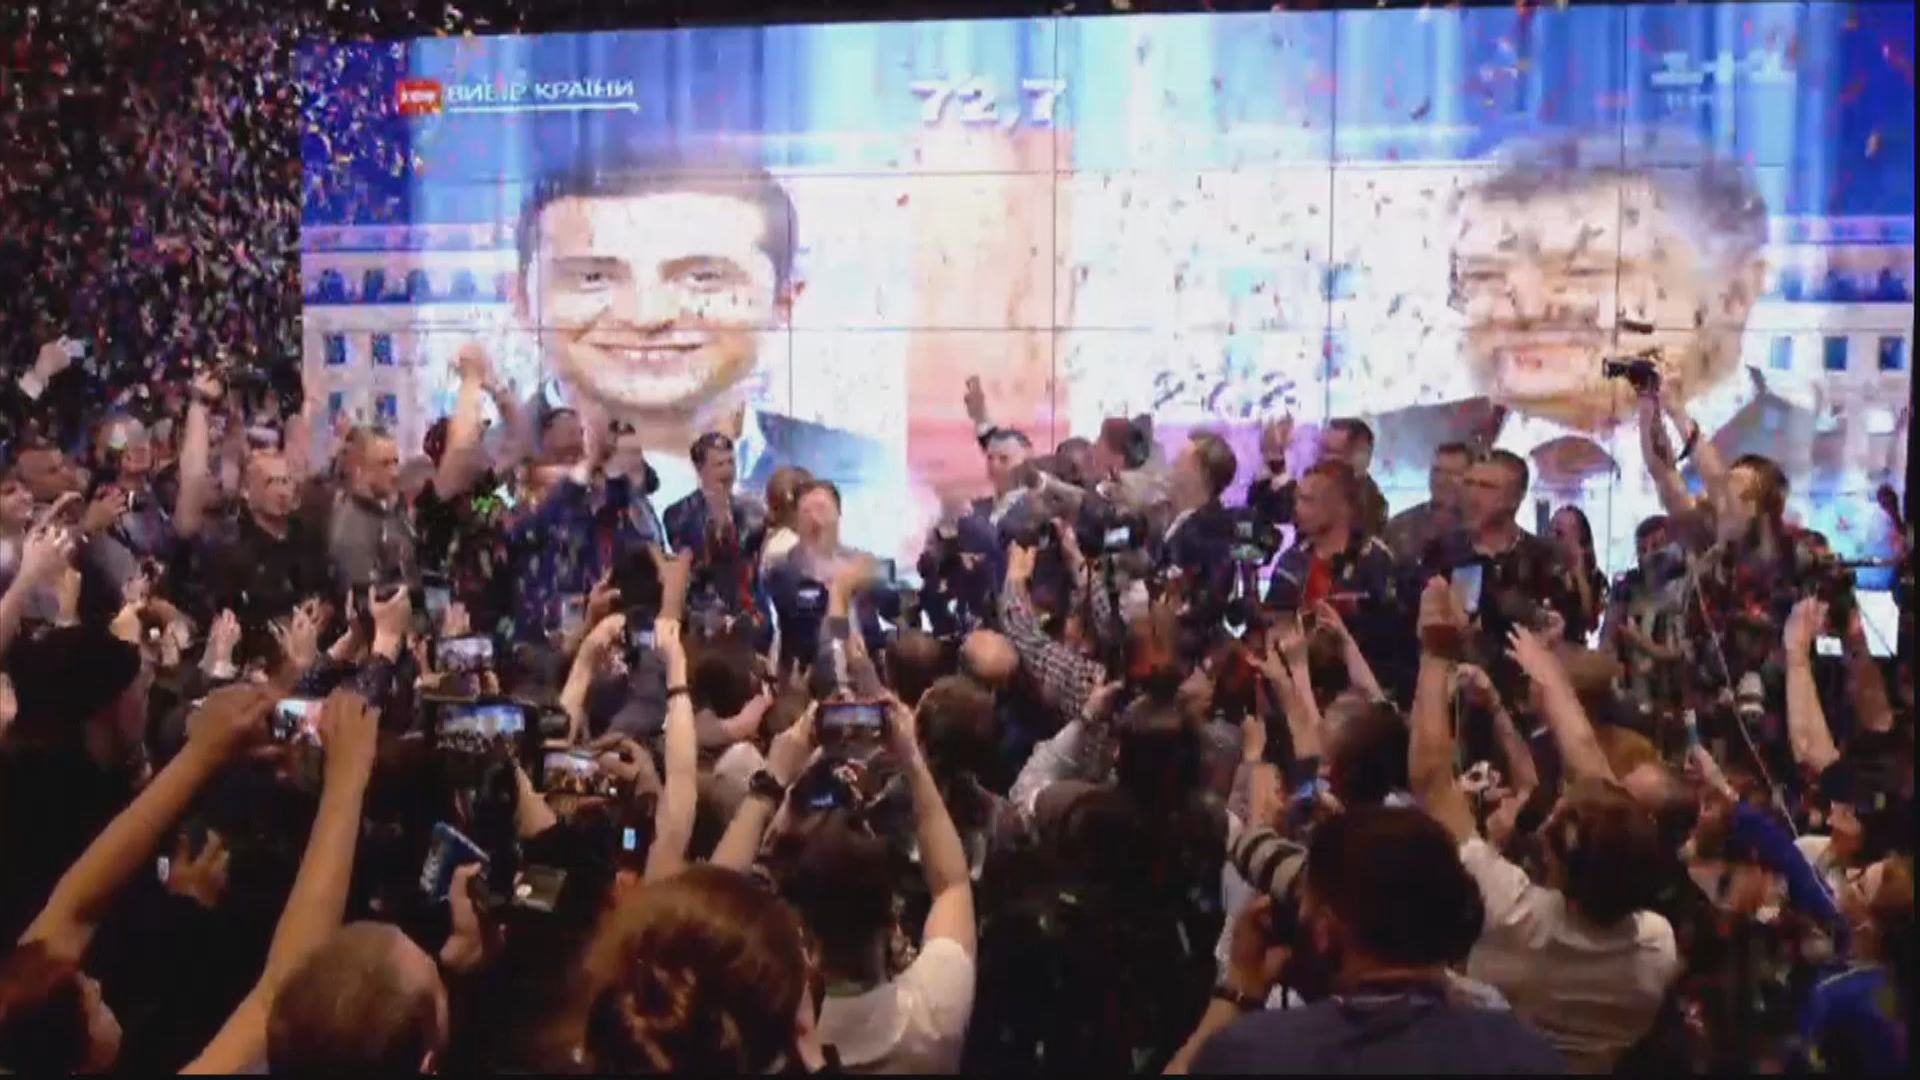 喜劇演員澤連斯基料當選烏克蘭總統